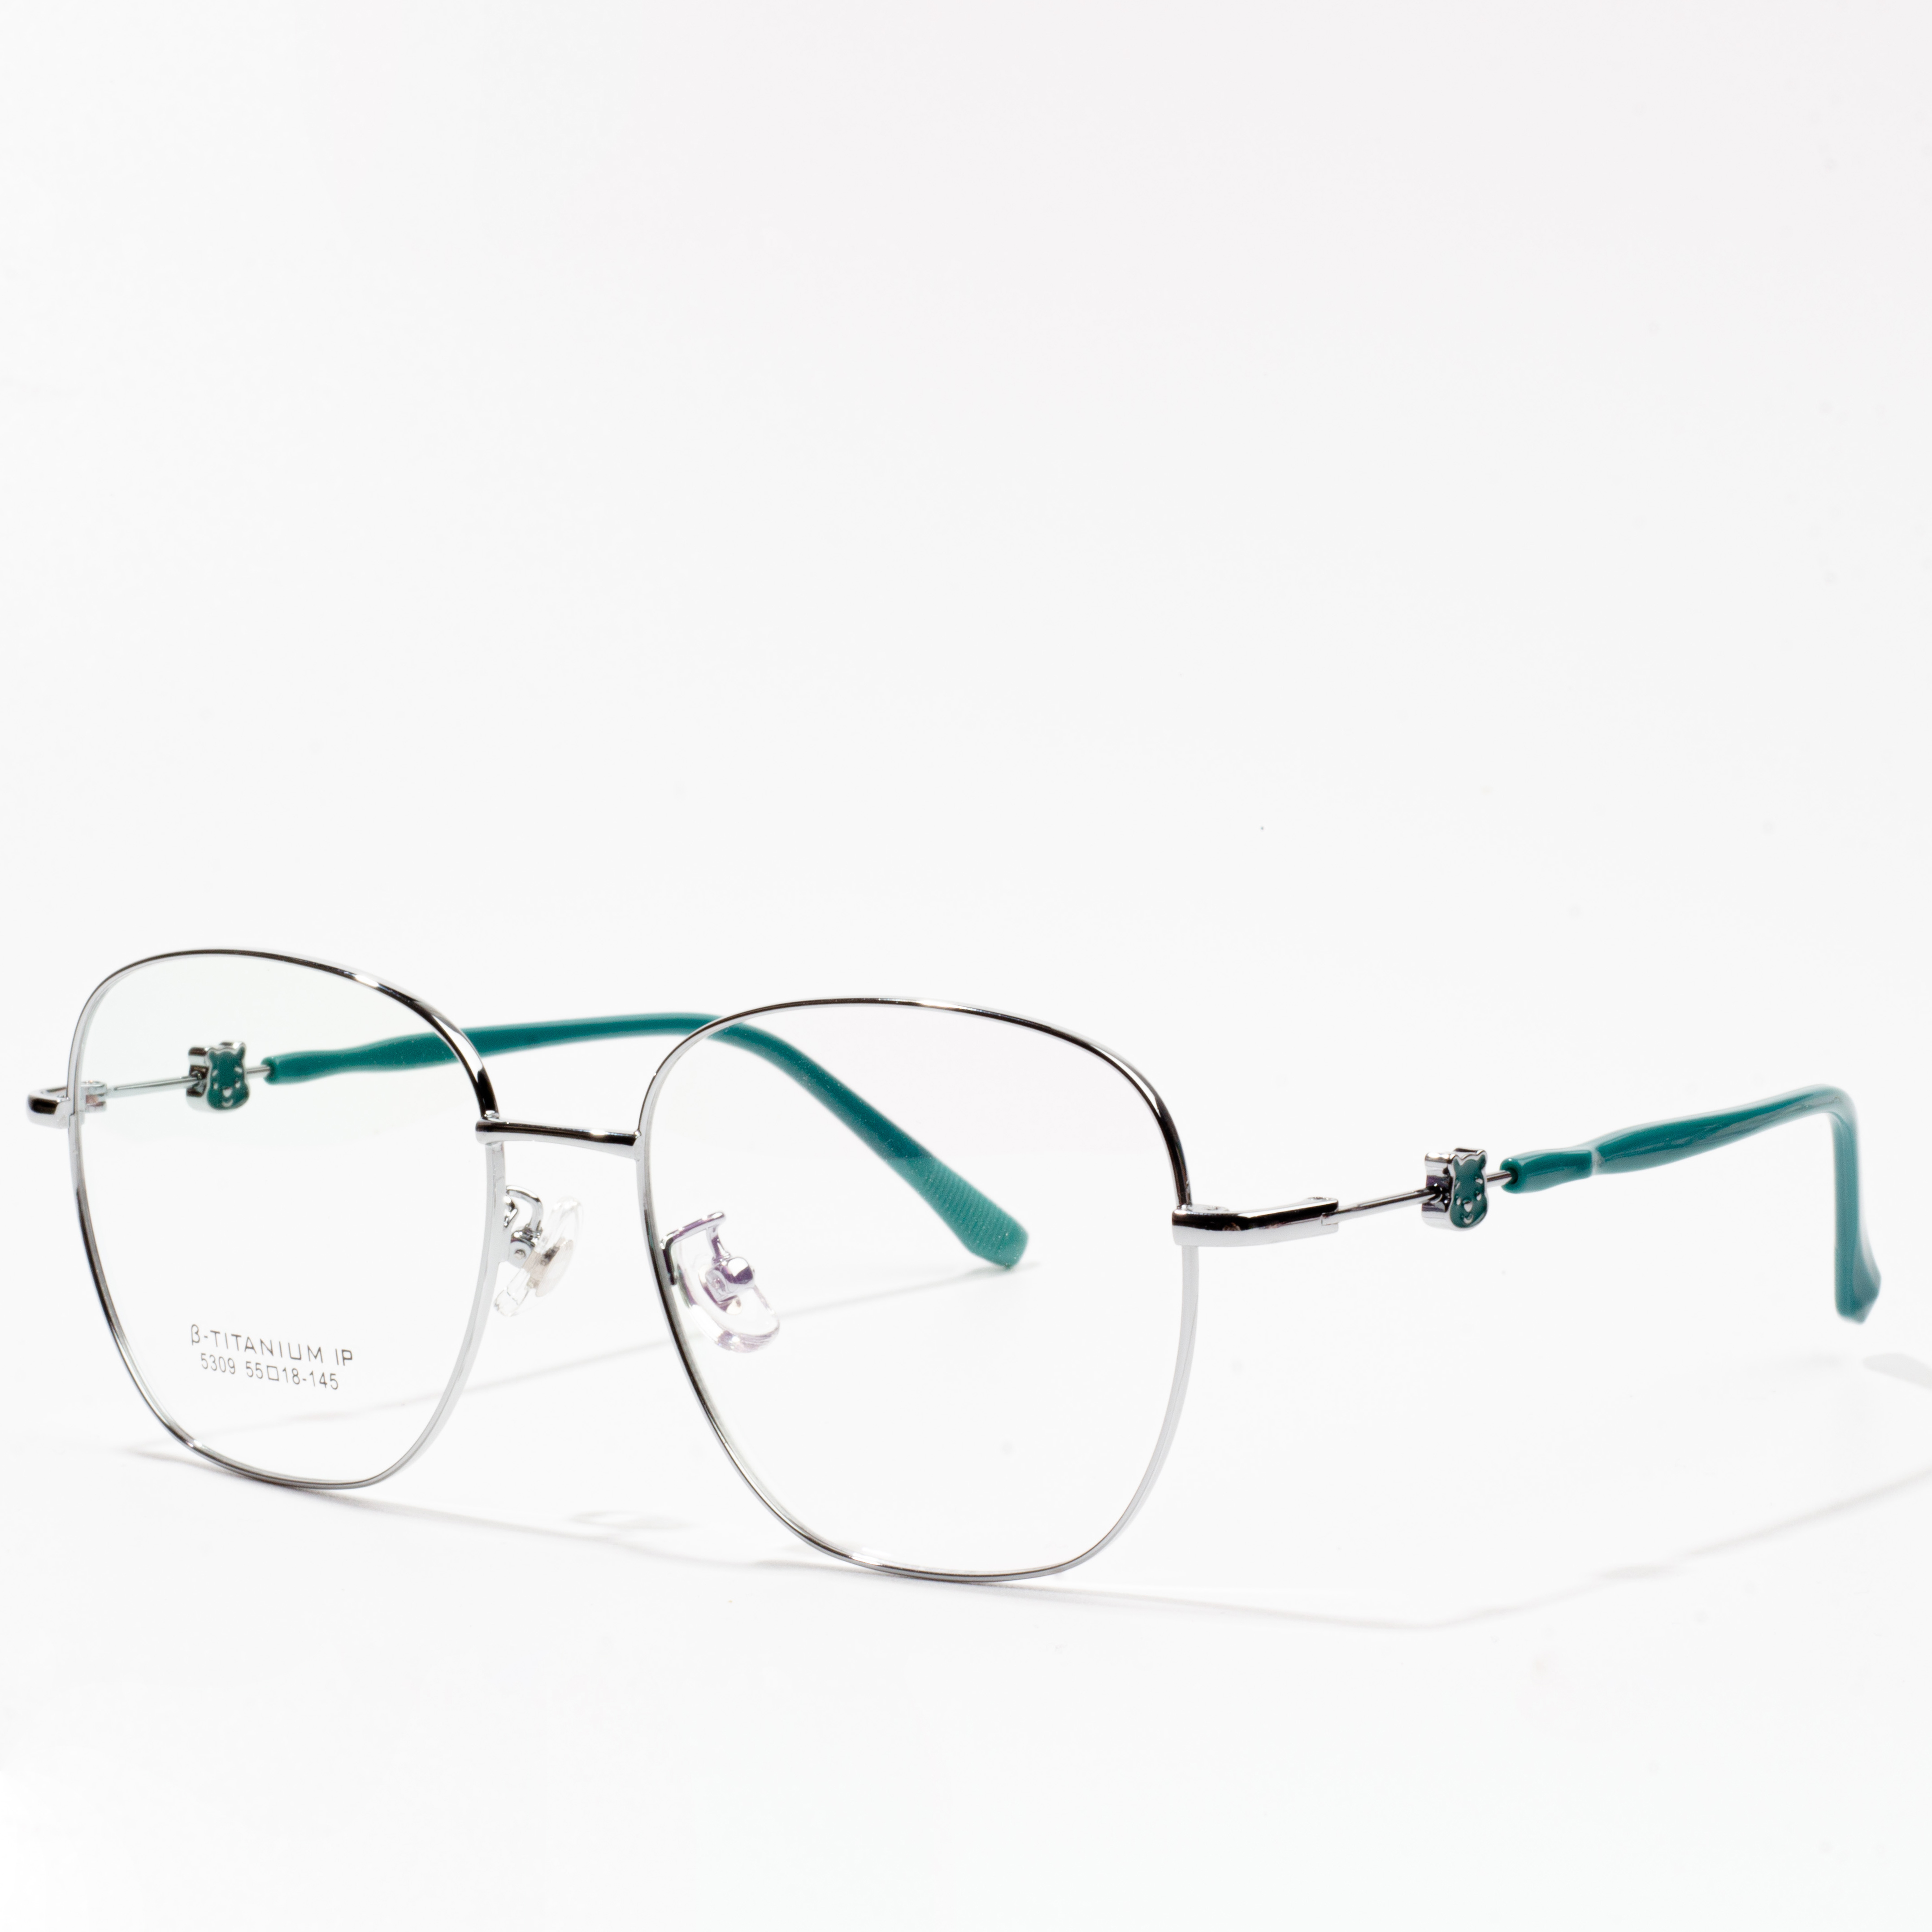 fframiau eyeglass